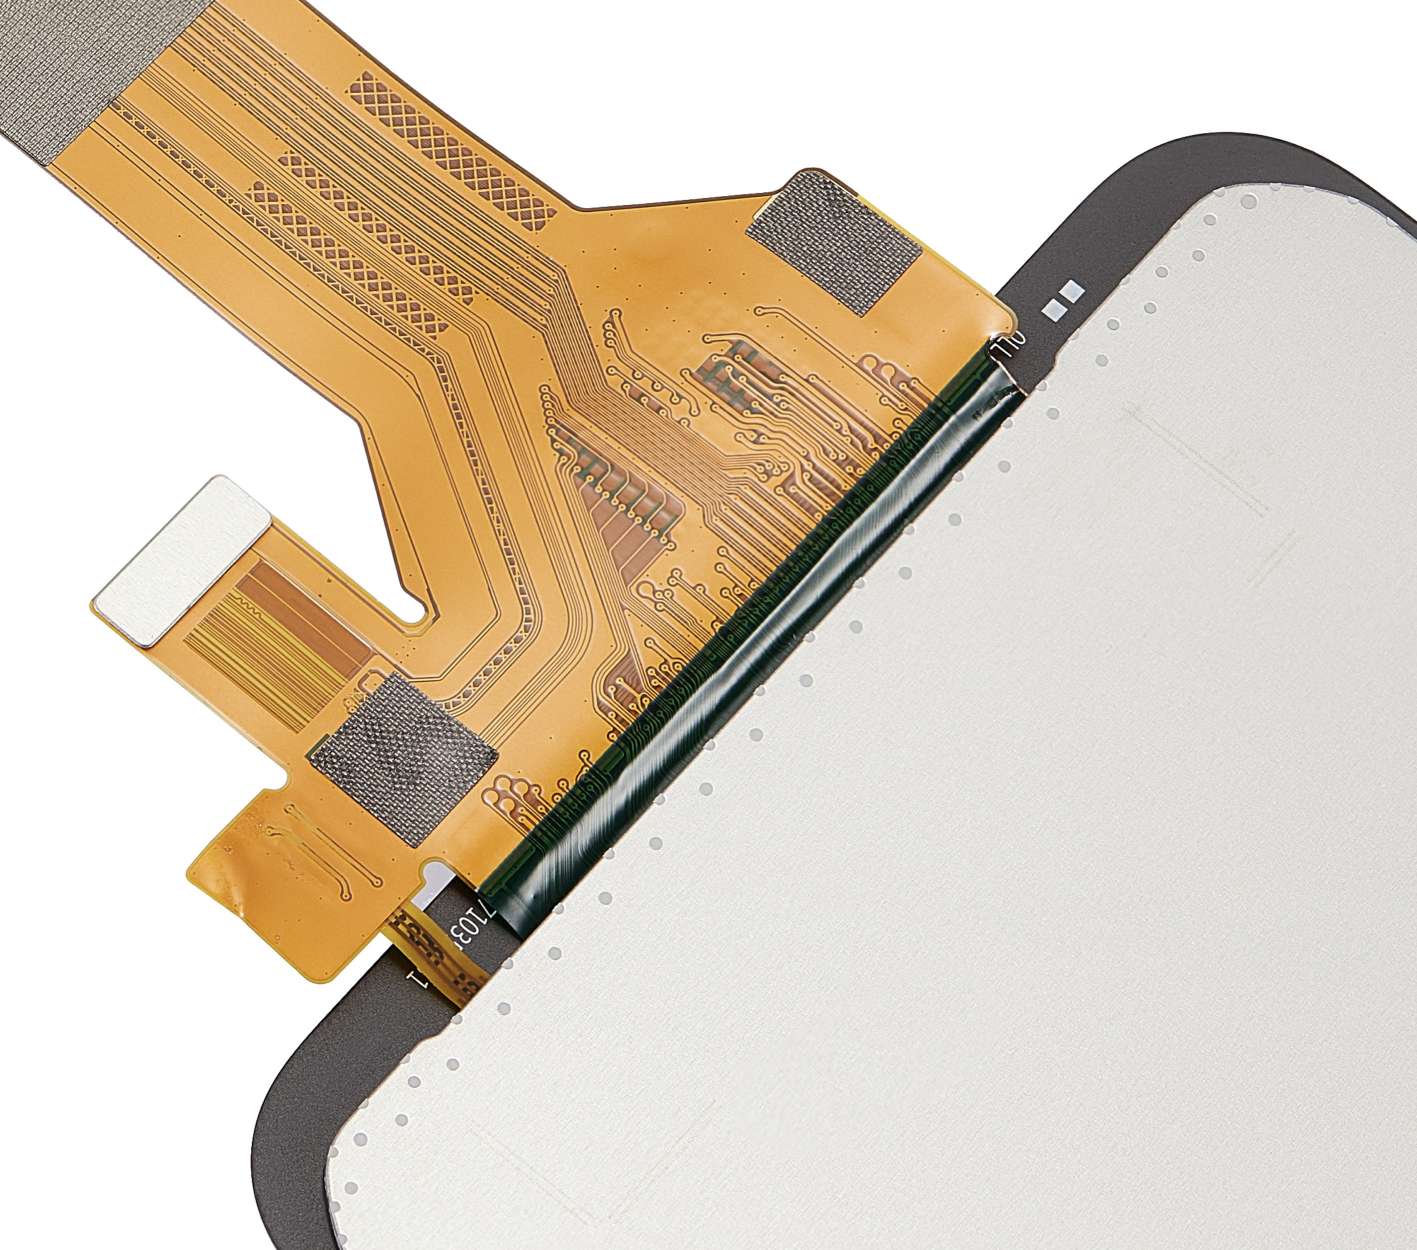 Motorola G Series üçün Çərçivəsiz LCD Yığma Uyğundur - 5 